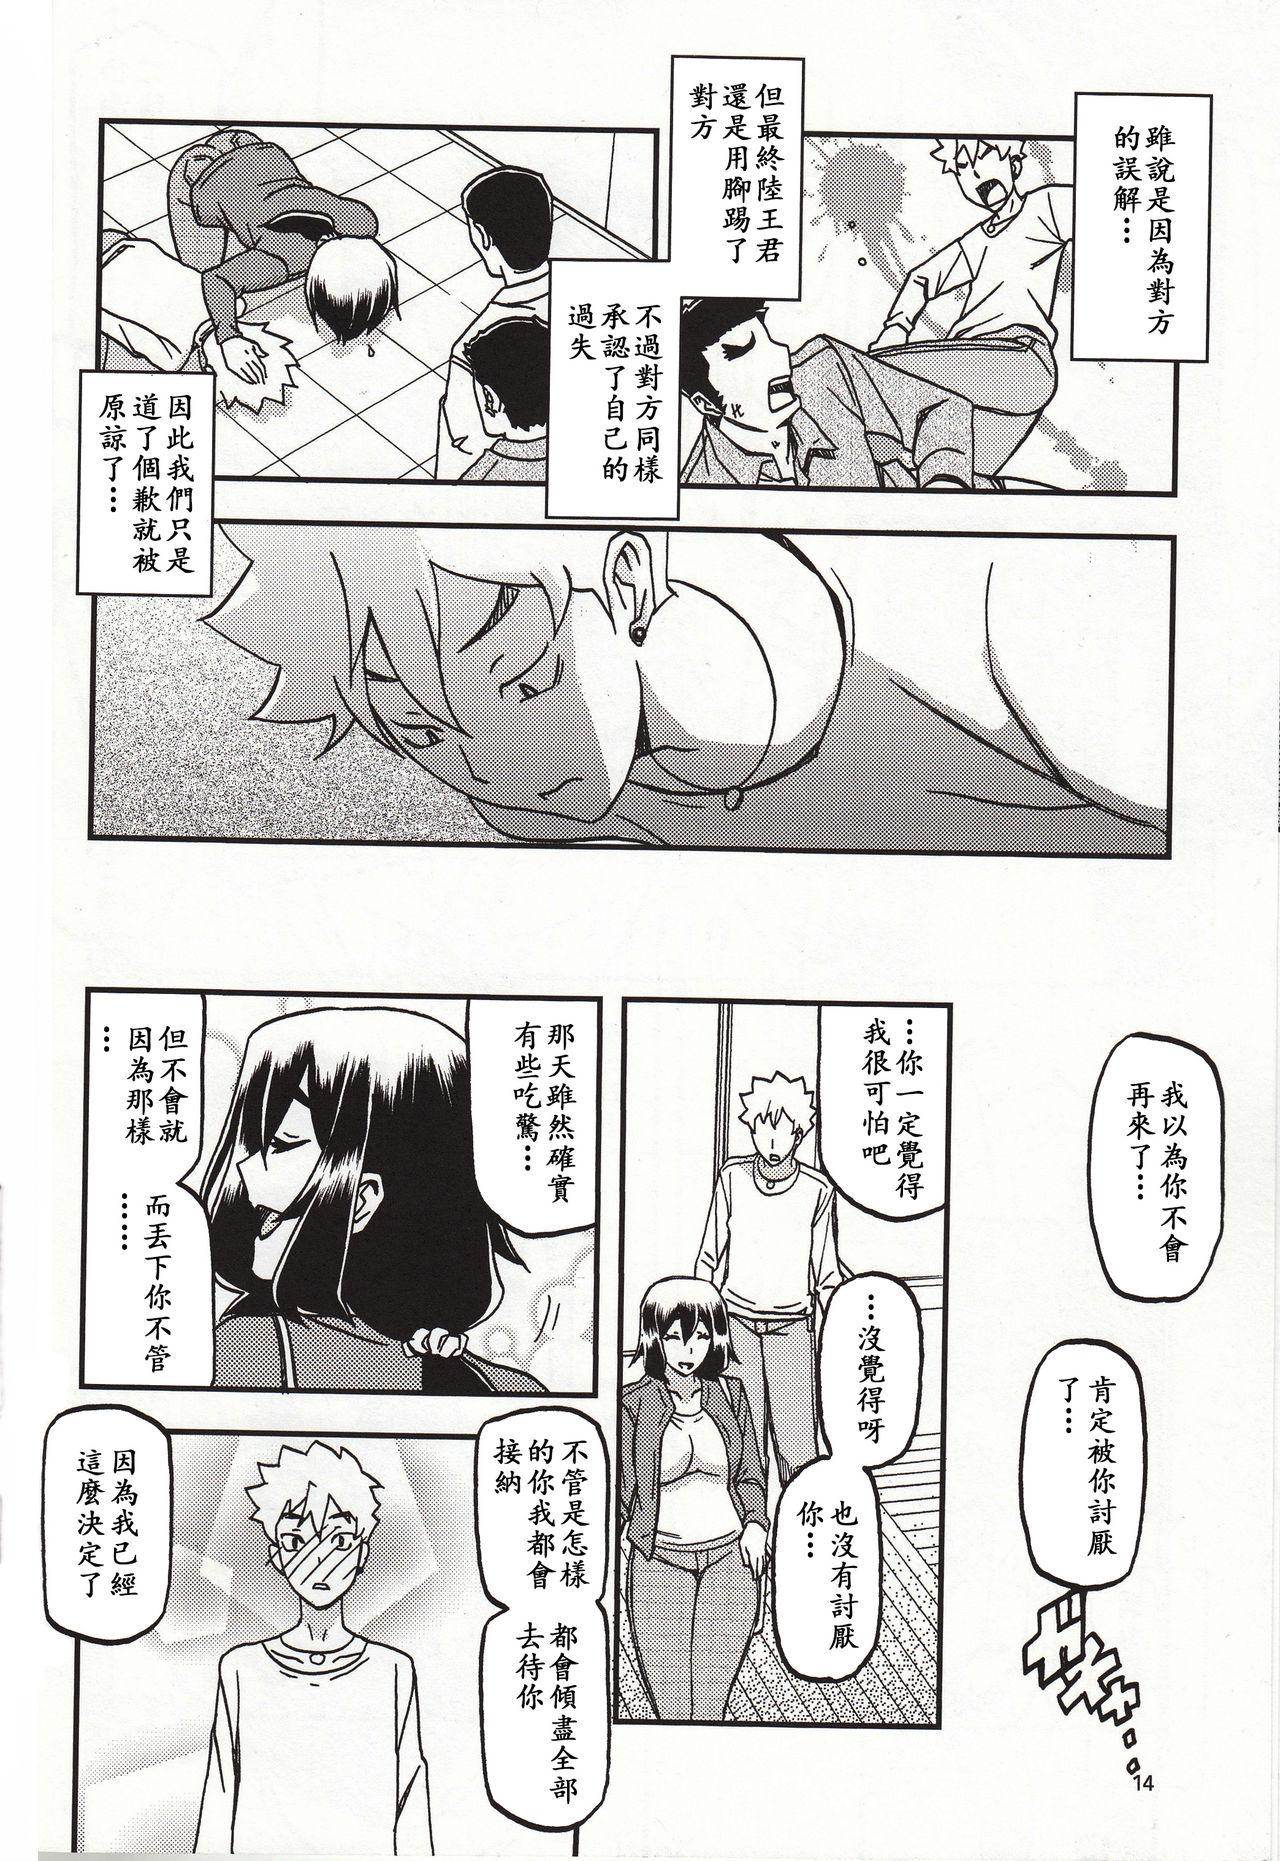 Jacking Akebi no Mi - Chizuru Katei - Akebi no mi Boy Girl - Page 13